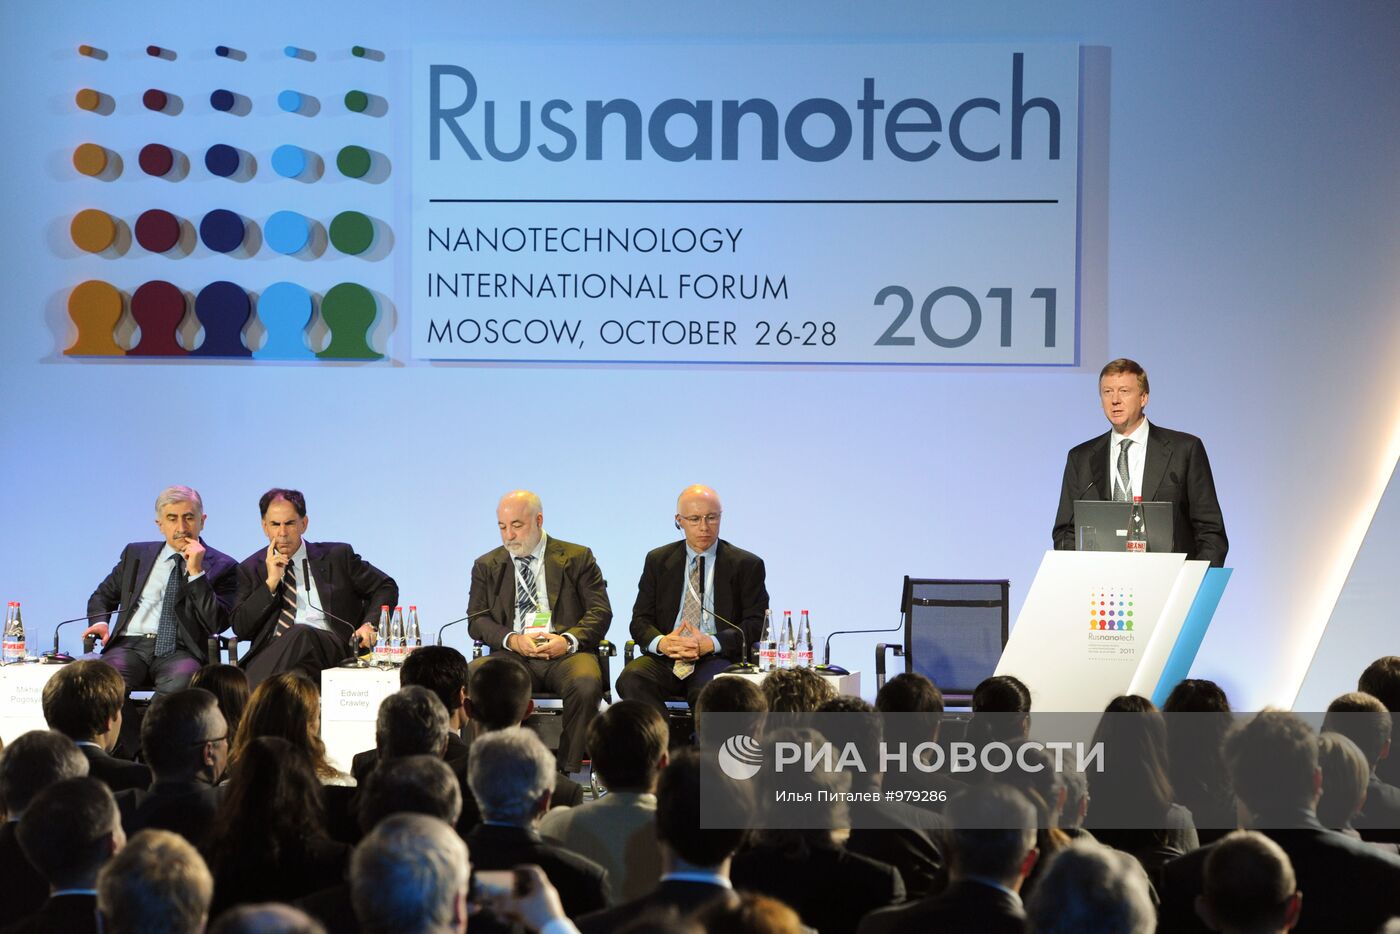 Открытие международного форума Rusnanotech 2011